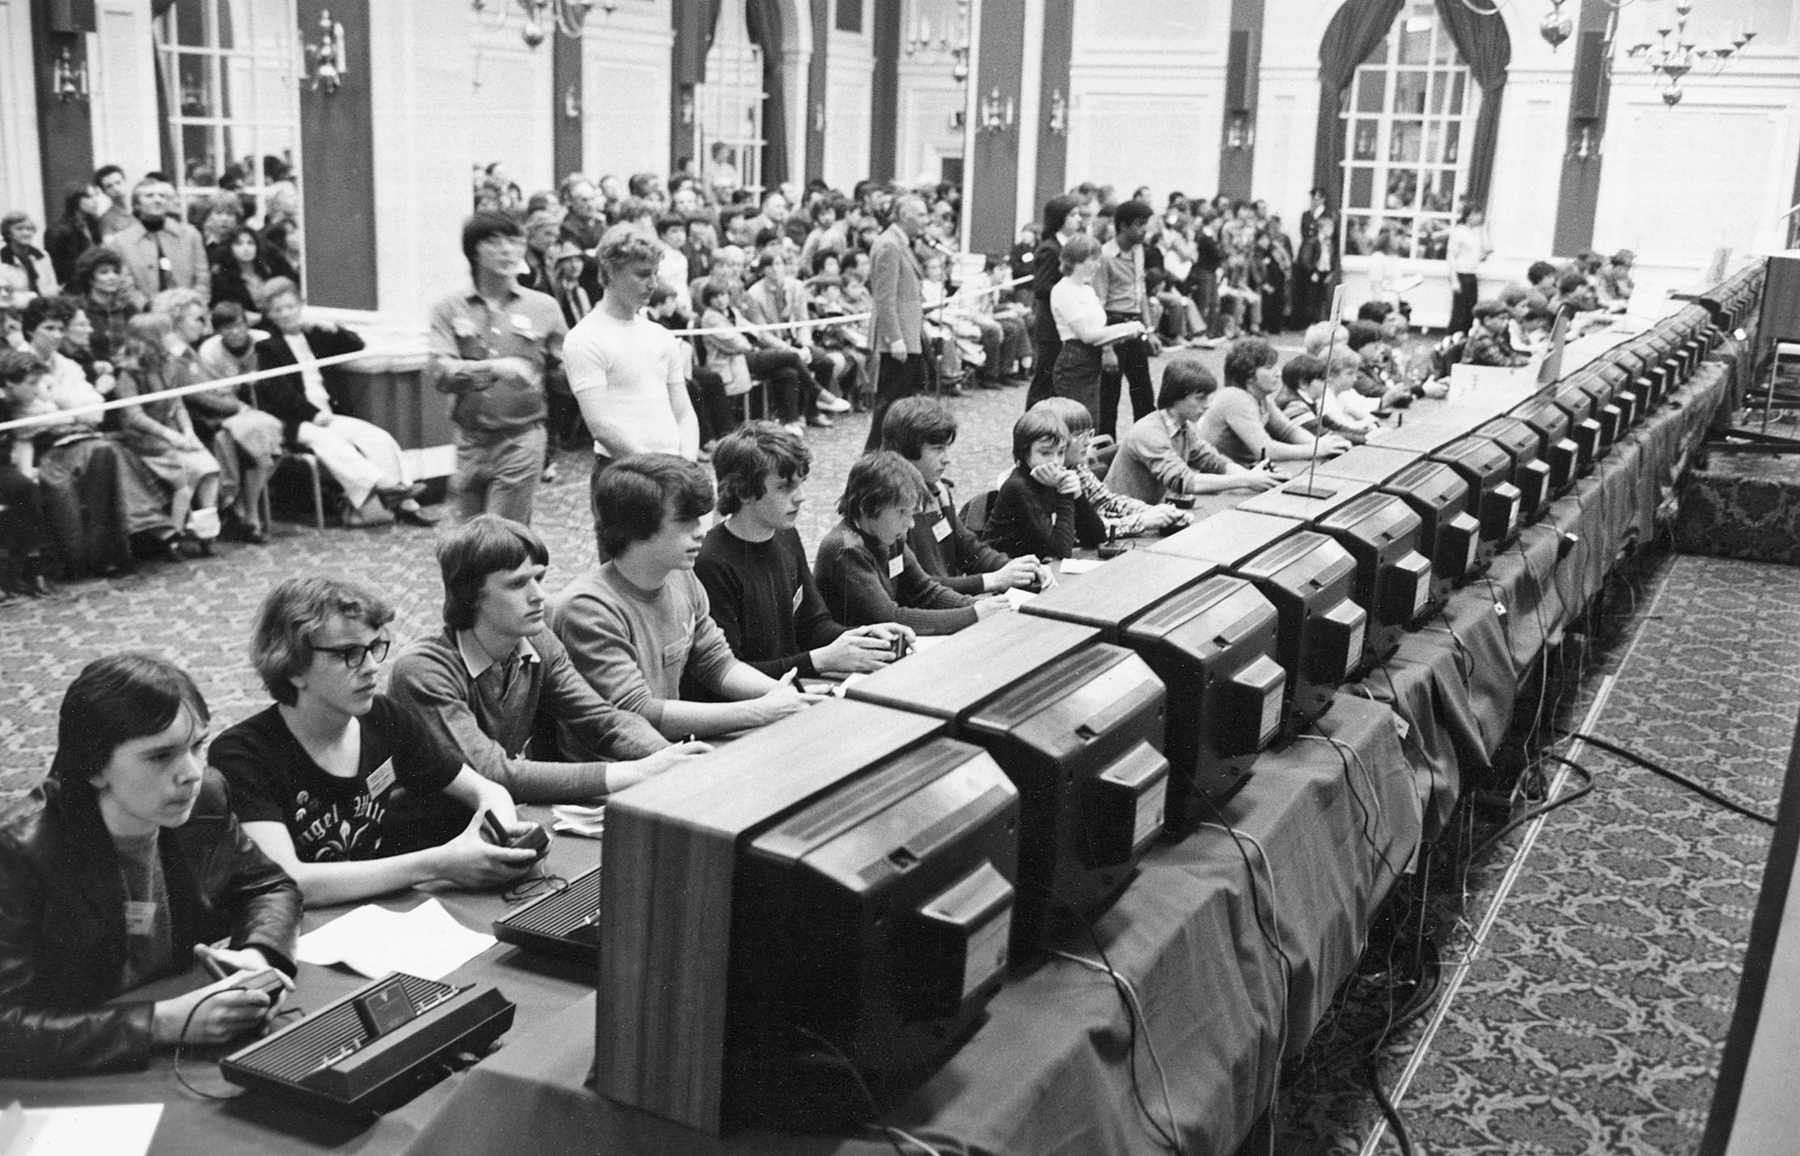 Fotografia em preto e branco. Vários jovens, sentados um ao lado do outro, de frente para um computador. Atrás, uma faixa os separa das pessoas que estão acompanhando o campeonato de videogame.